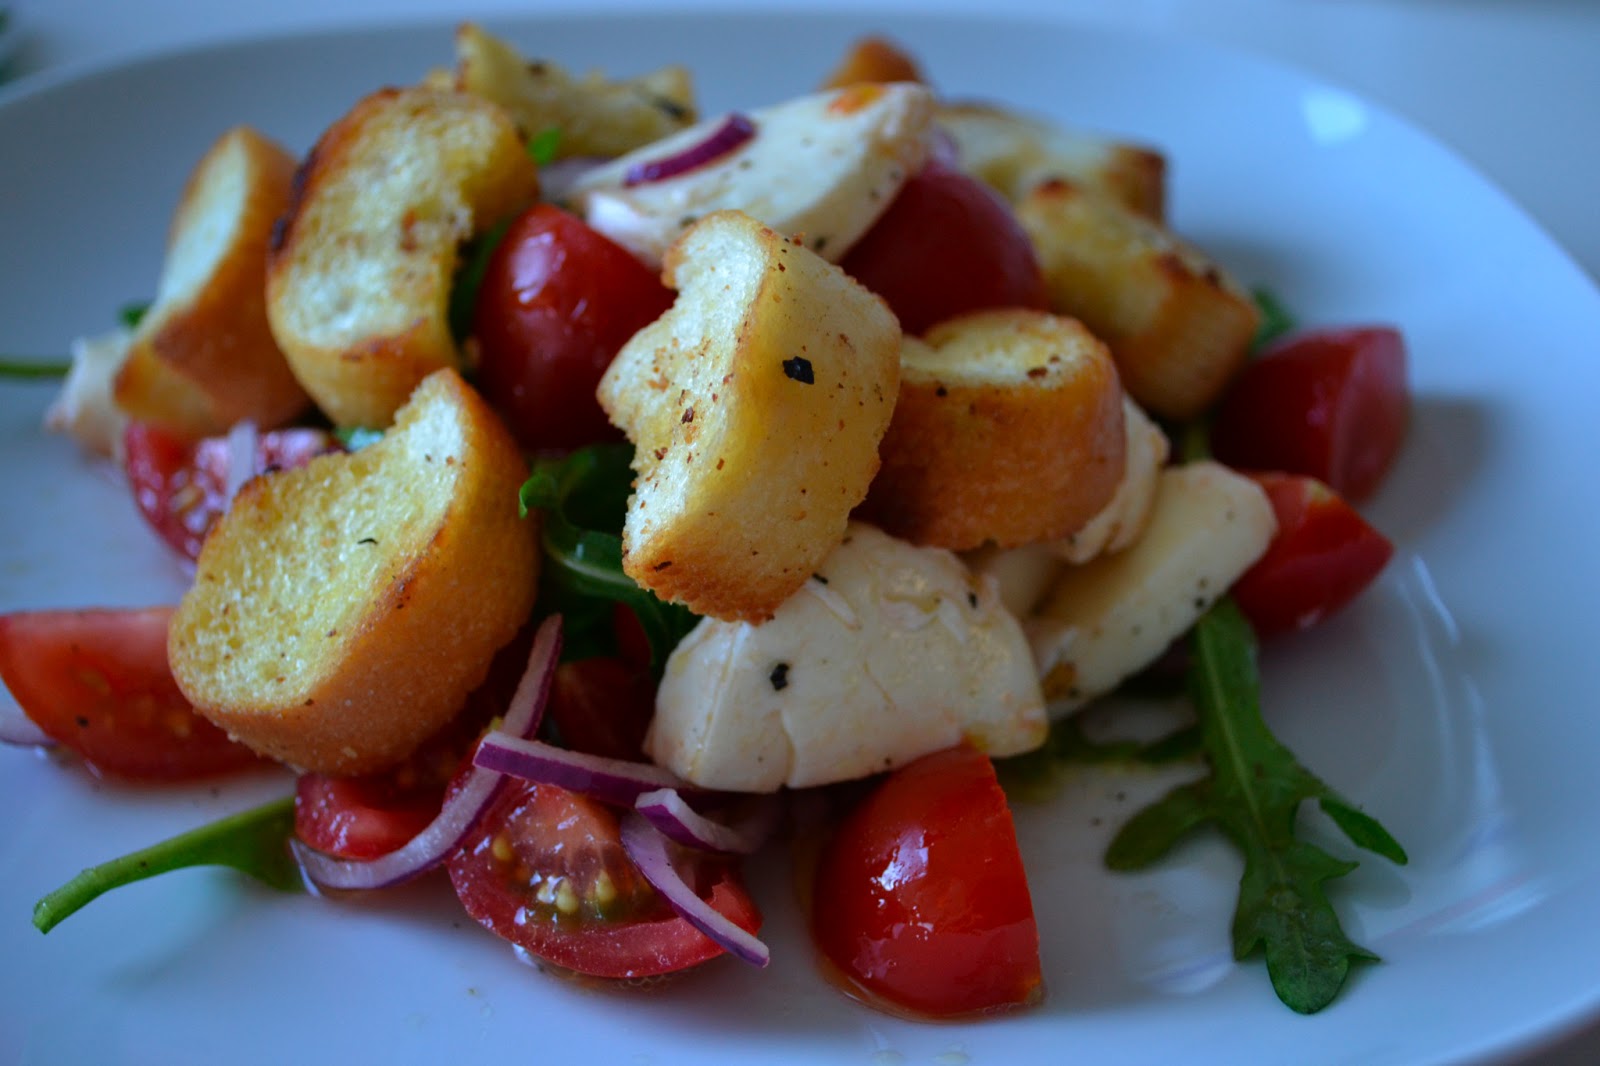 Gute Nahrung macht glücklich : Tomaten-Brot-Salat mit Mozarella